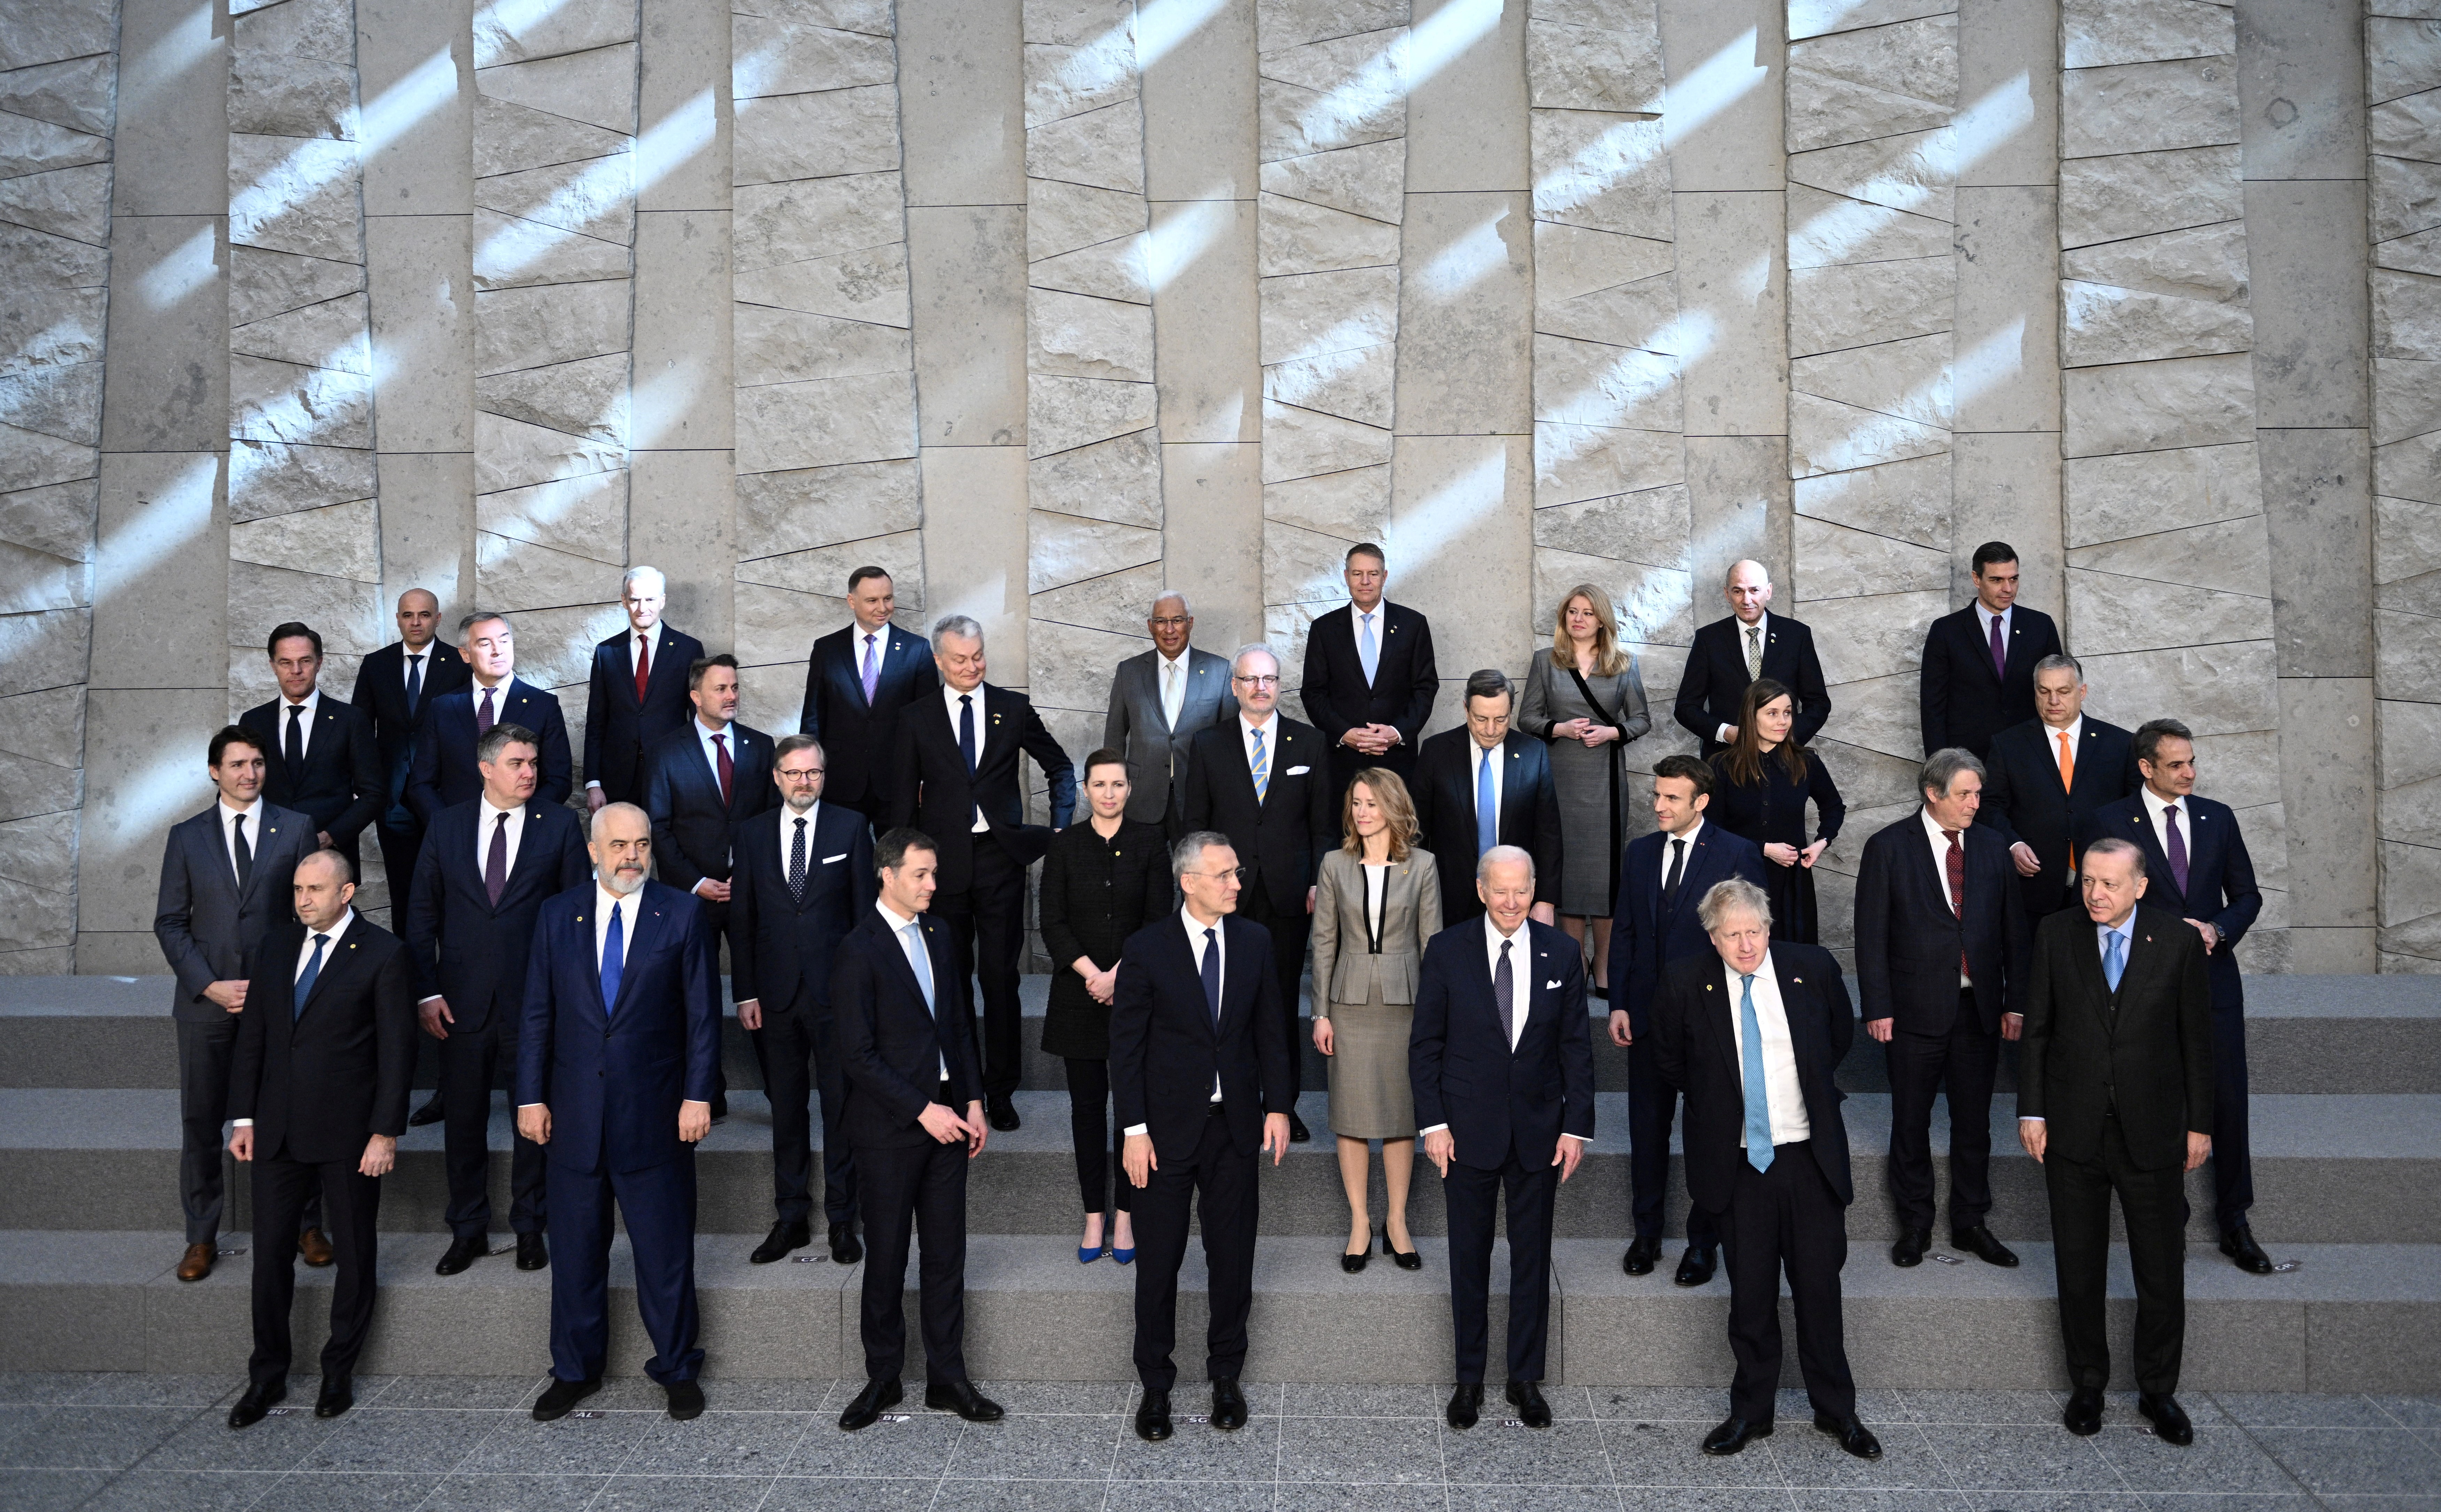 La foto grupal de los líderes de la Alianza Atlántica en Bruselas (Brendan Smialowski via REUTERS)